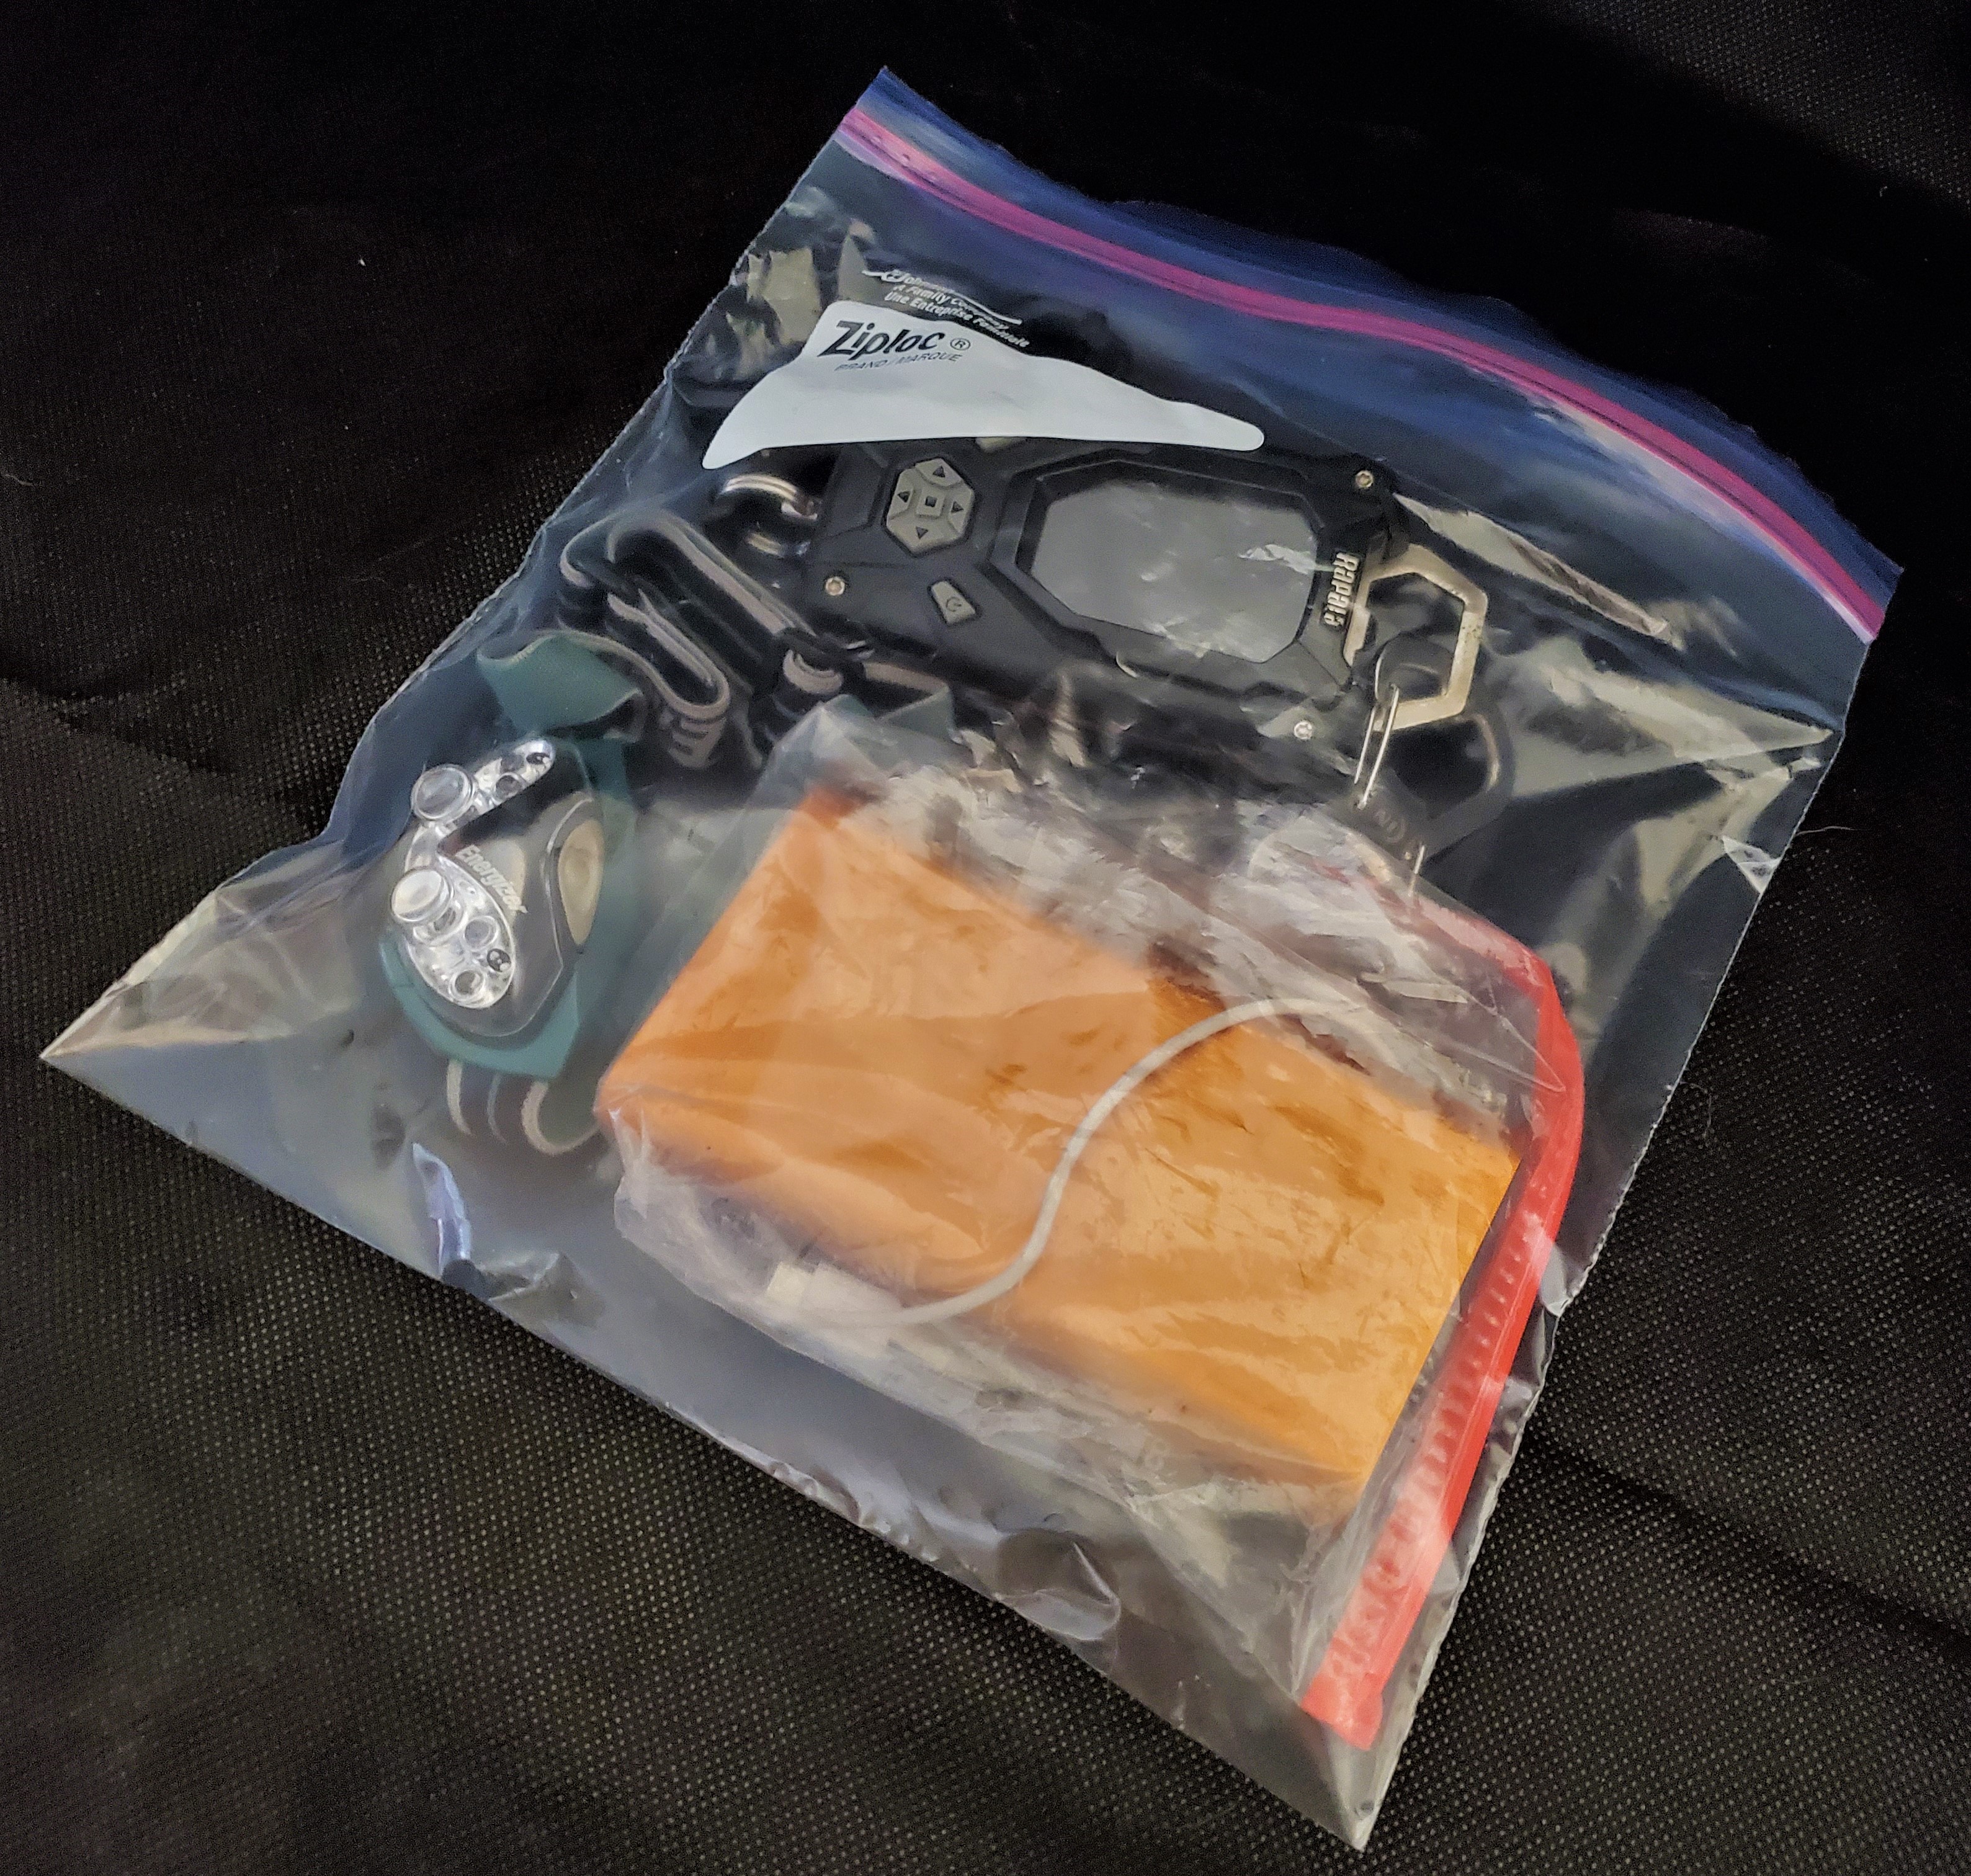 Fishing gear in a ziploc bag